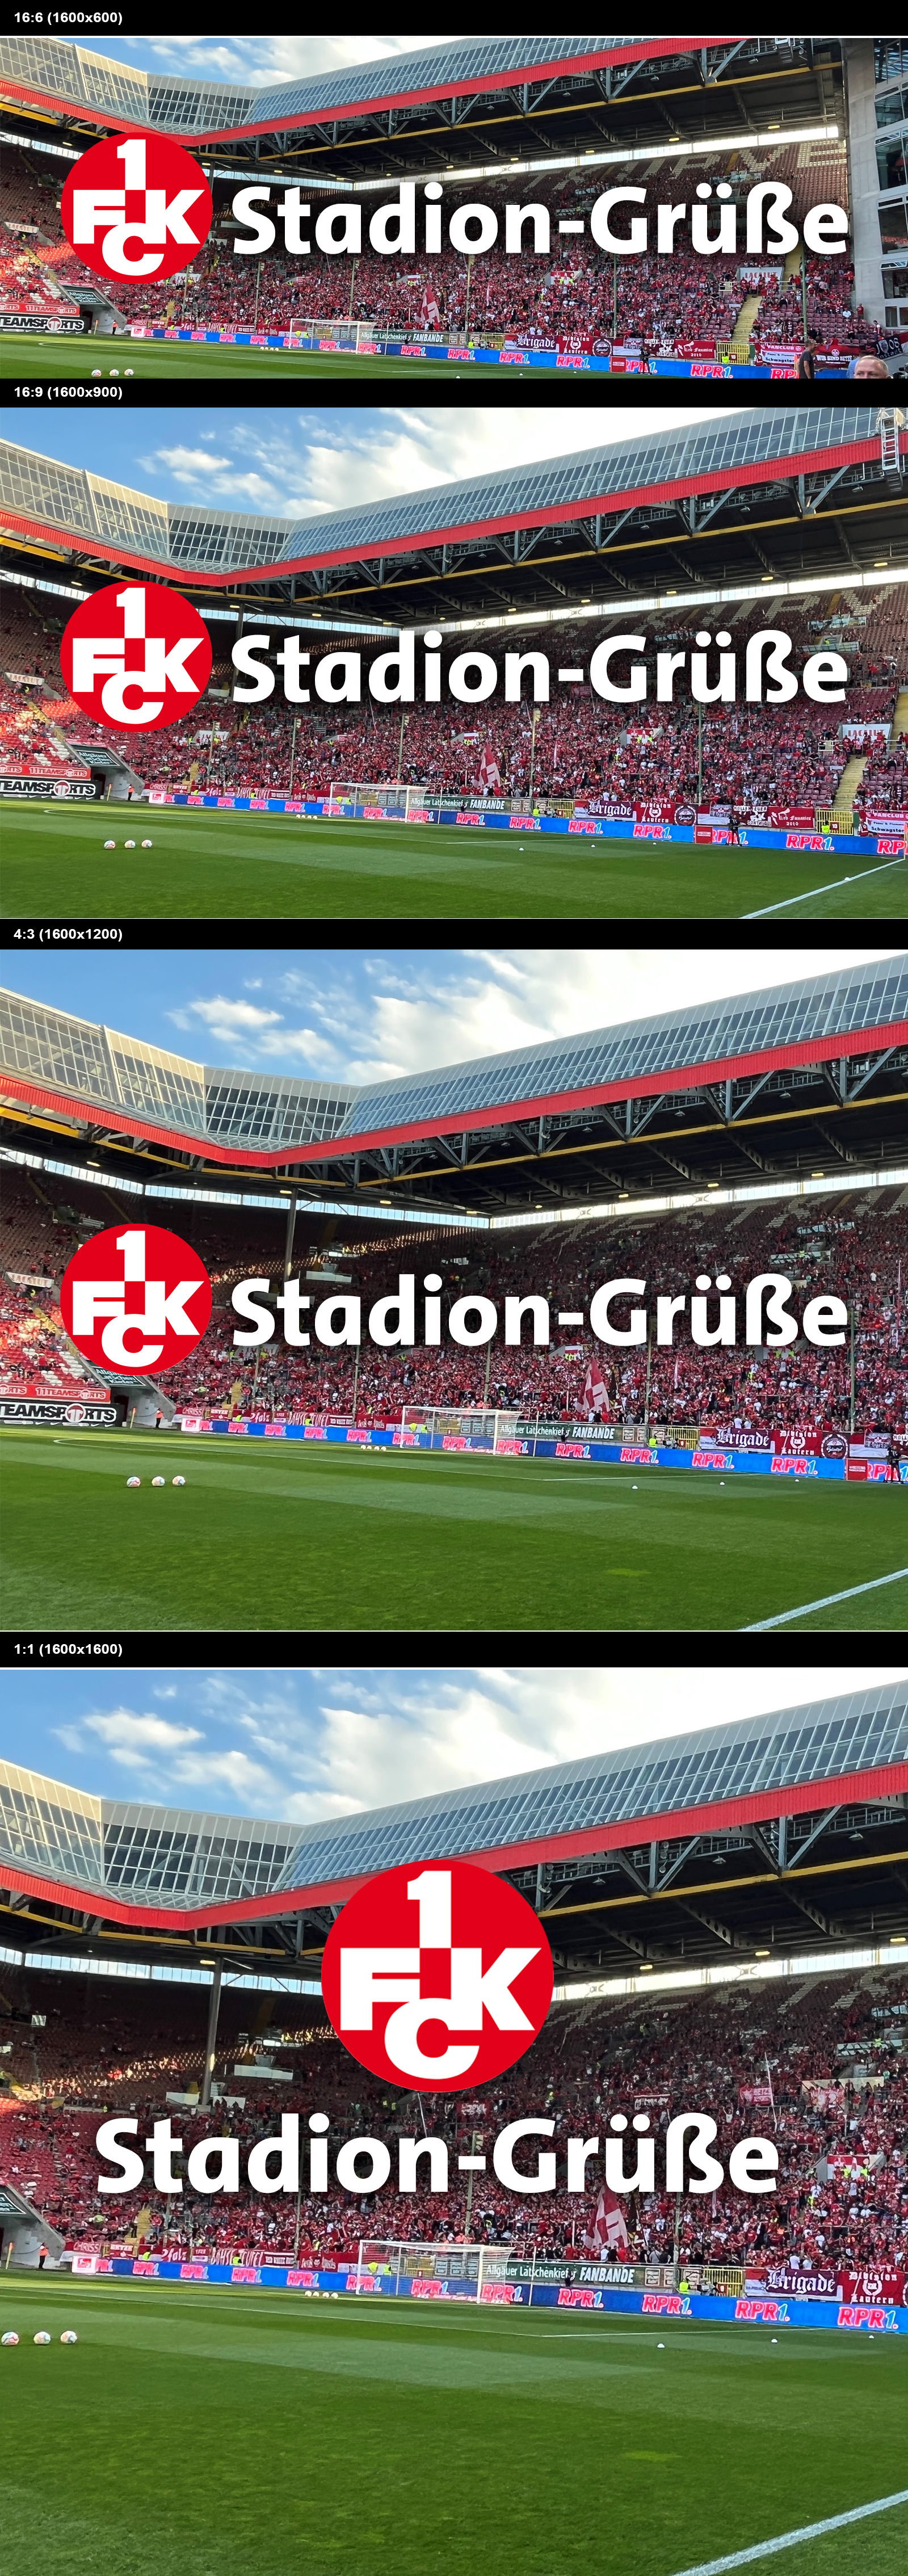 FCK Stadion-Grüße, Fanradio und Gewinnspiele RPR1.